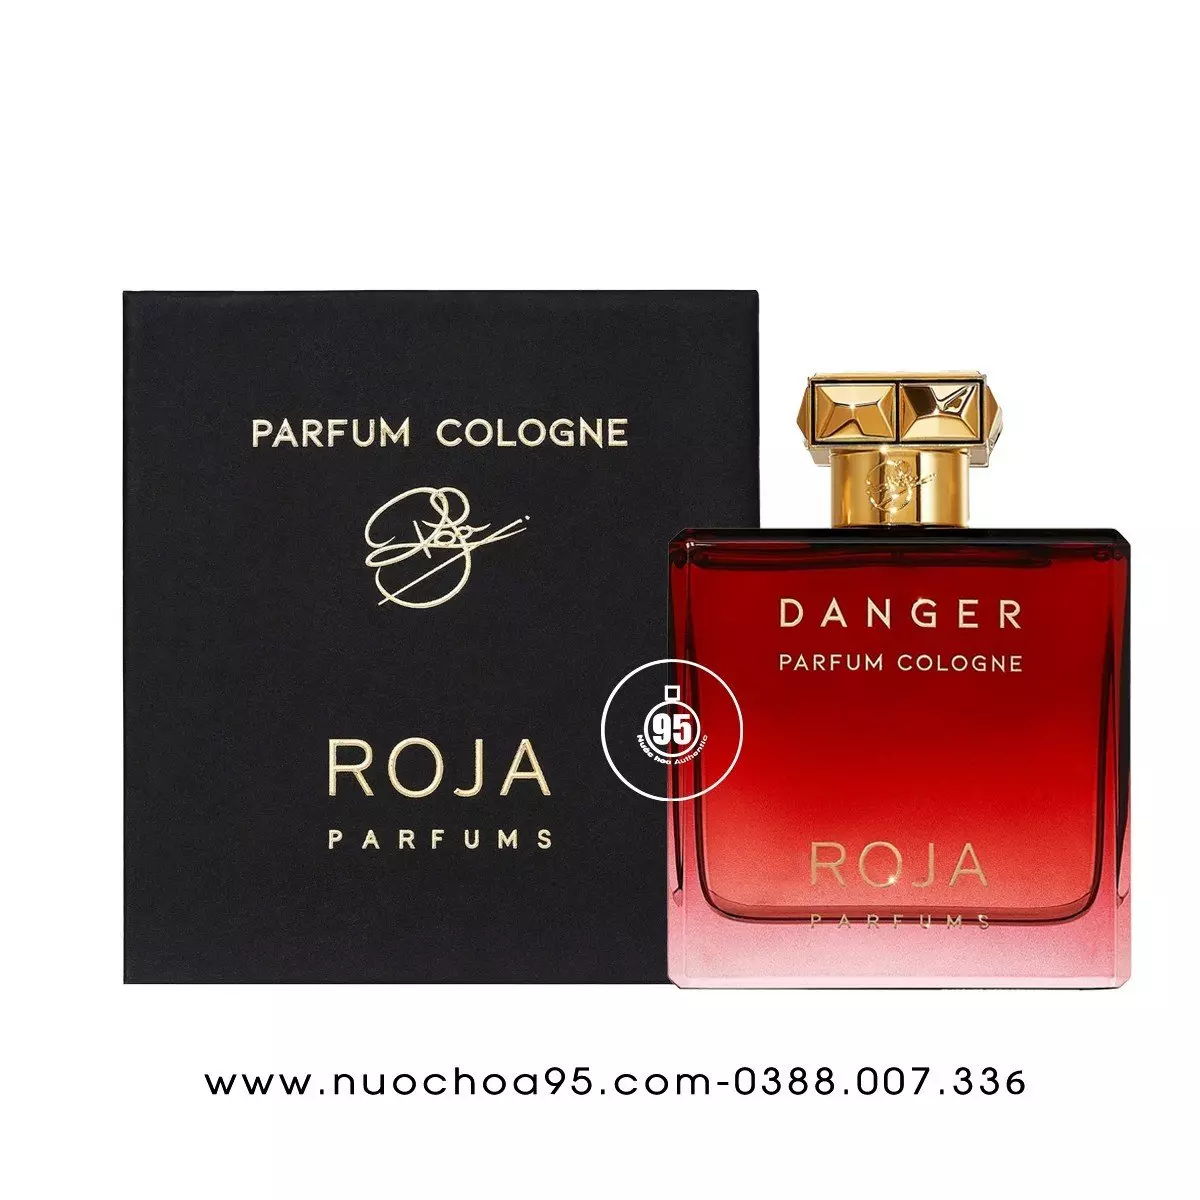 Nước hoa Roja Danger Pour Homme Parfum Cologne